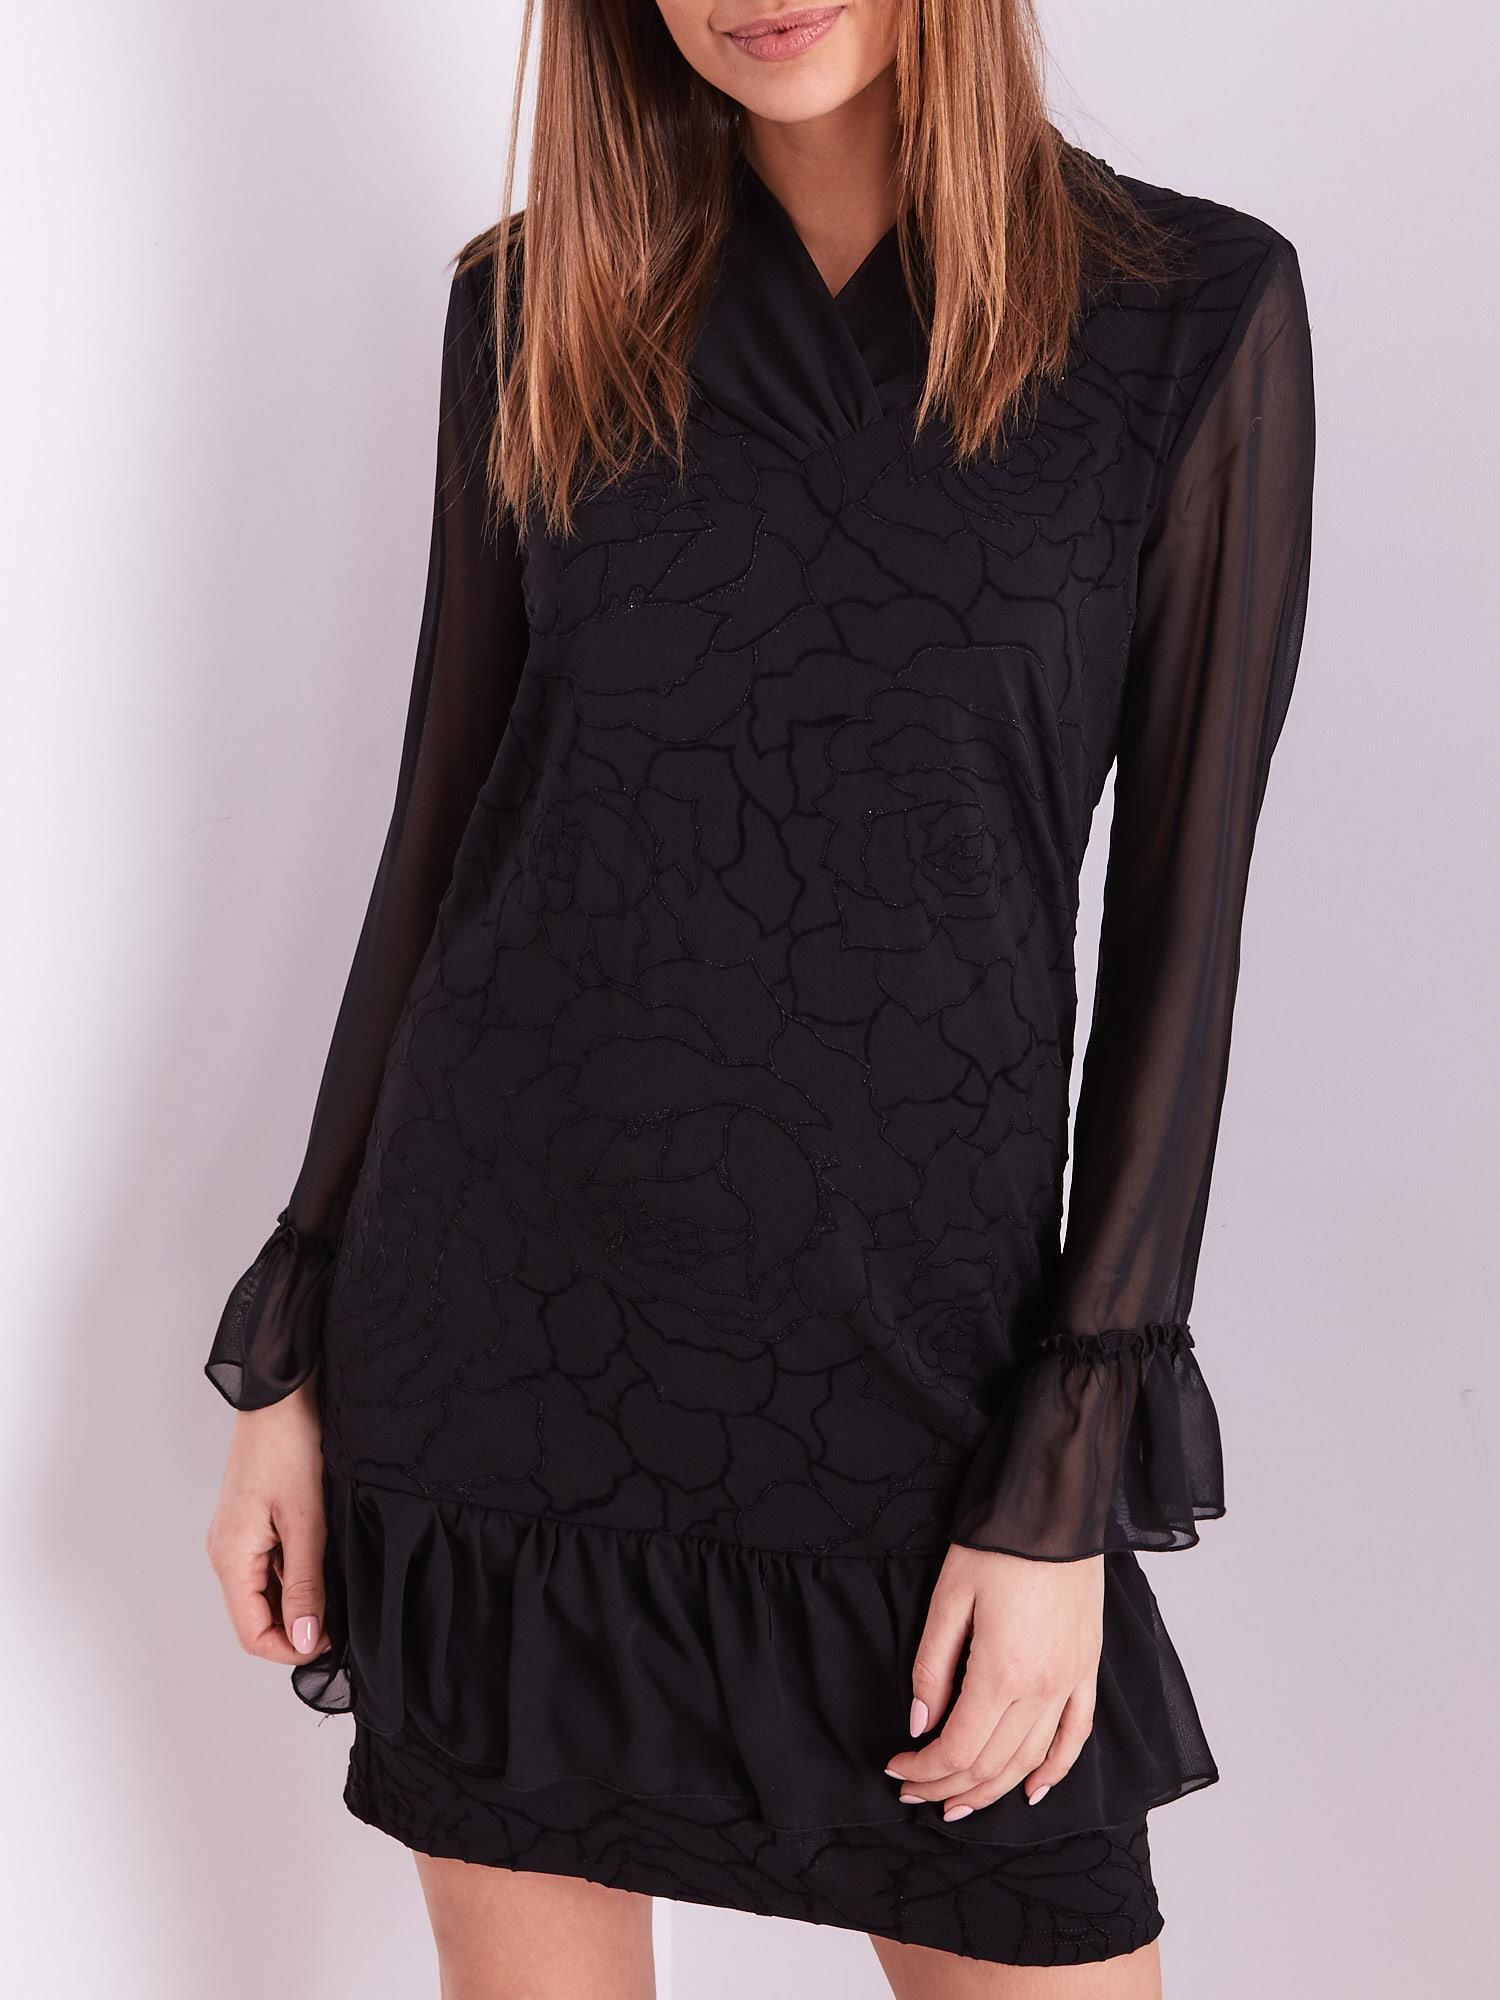 Μαύρο φόρεμα με λεπτό floral μοτίβο